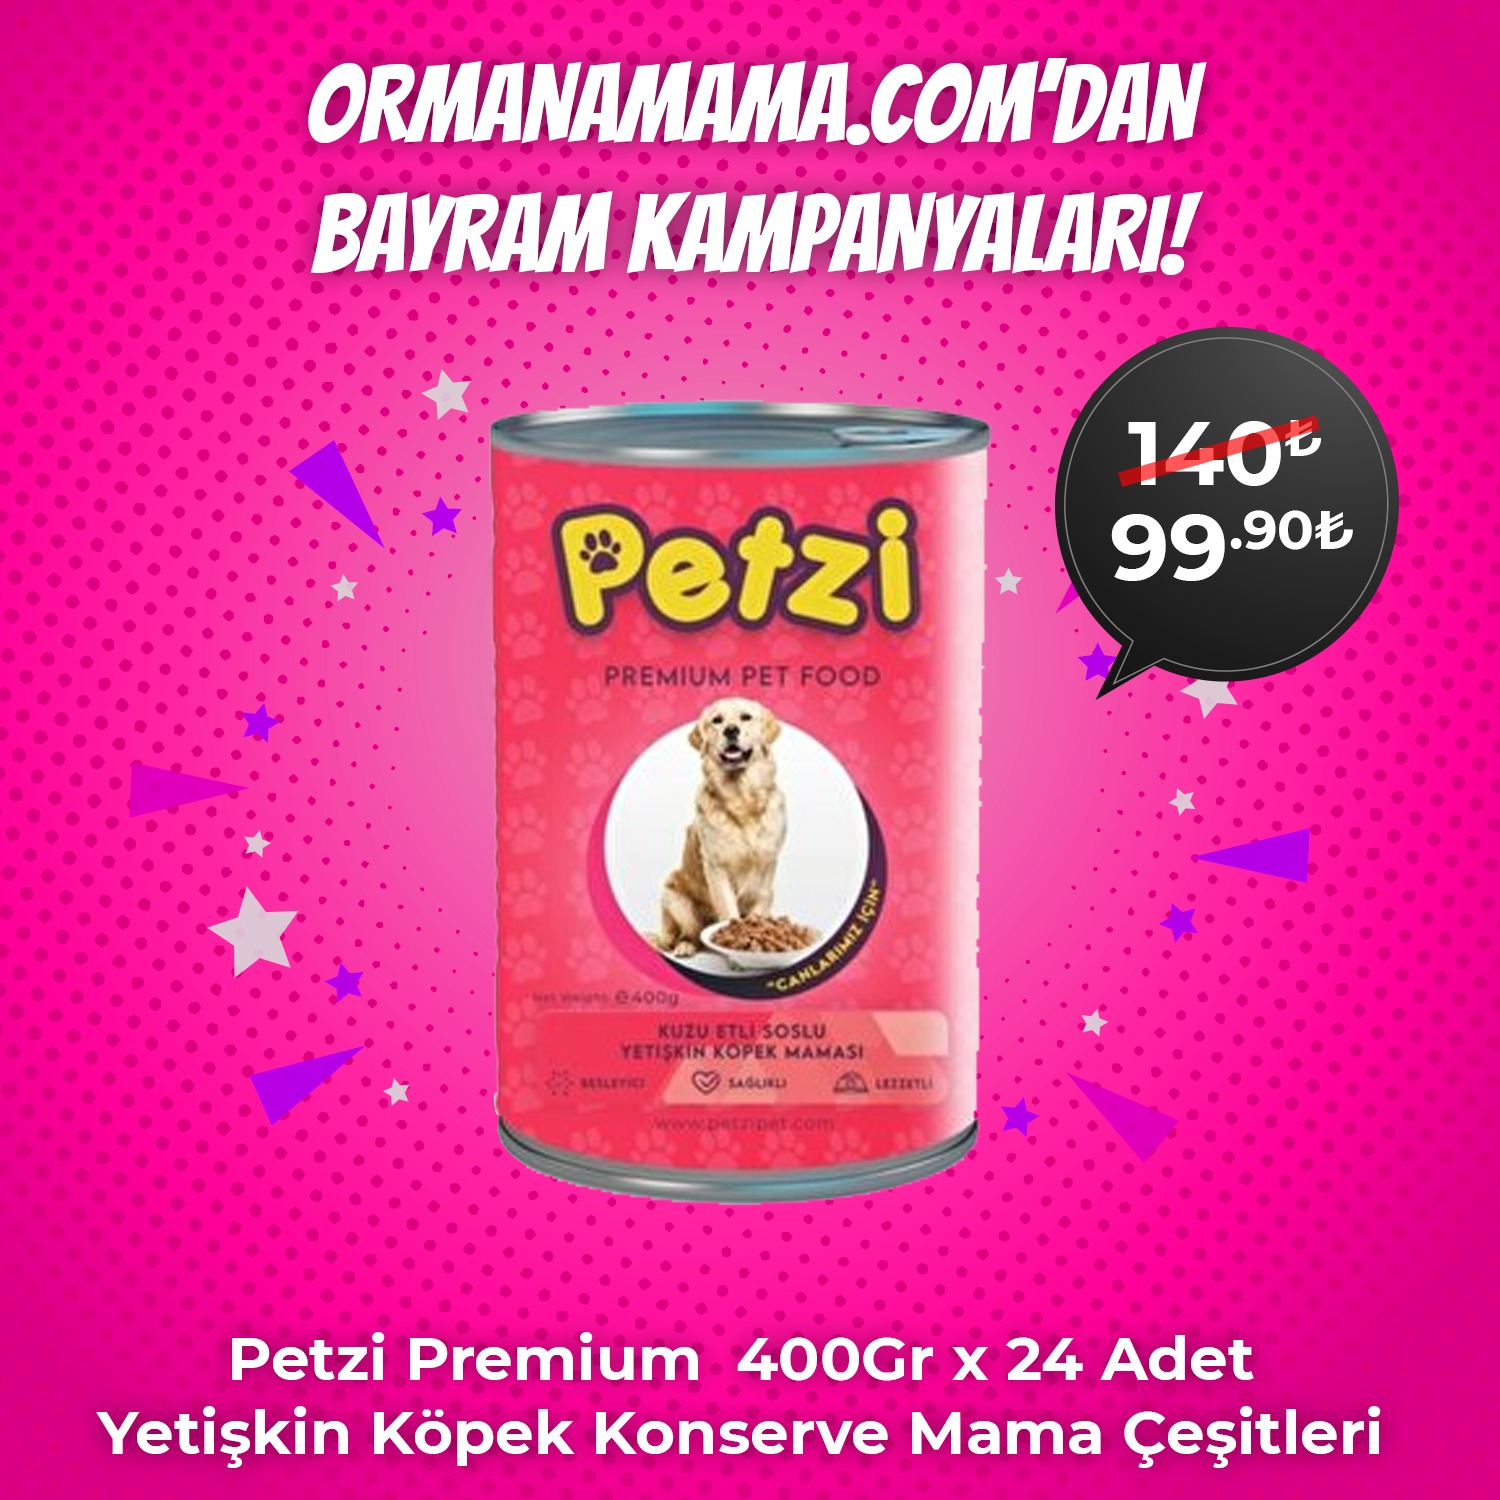 Petzi Premium  400Gr x 24 Adet Yetişkin Köpek Konserve Mama Çeşitleri